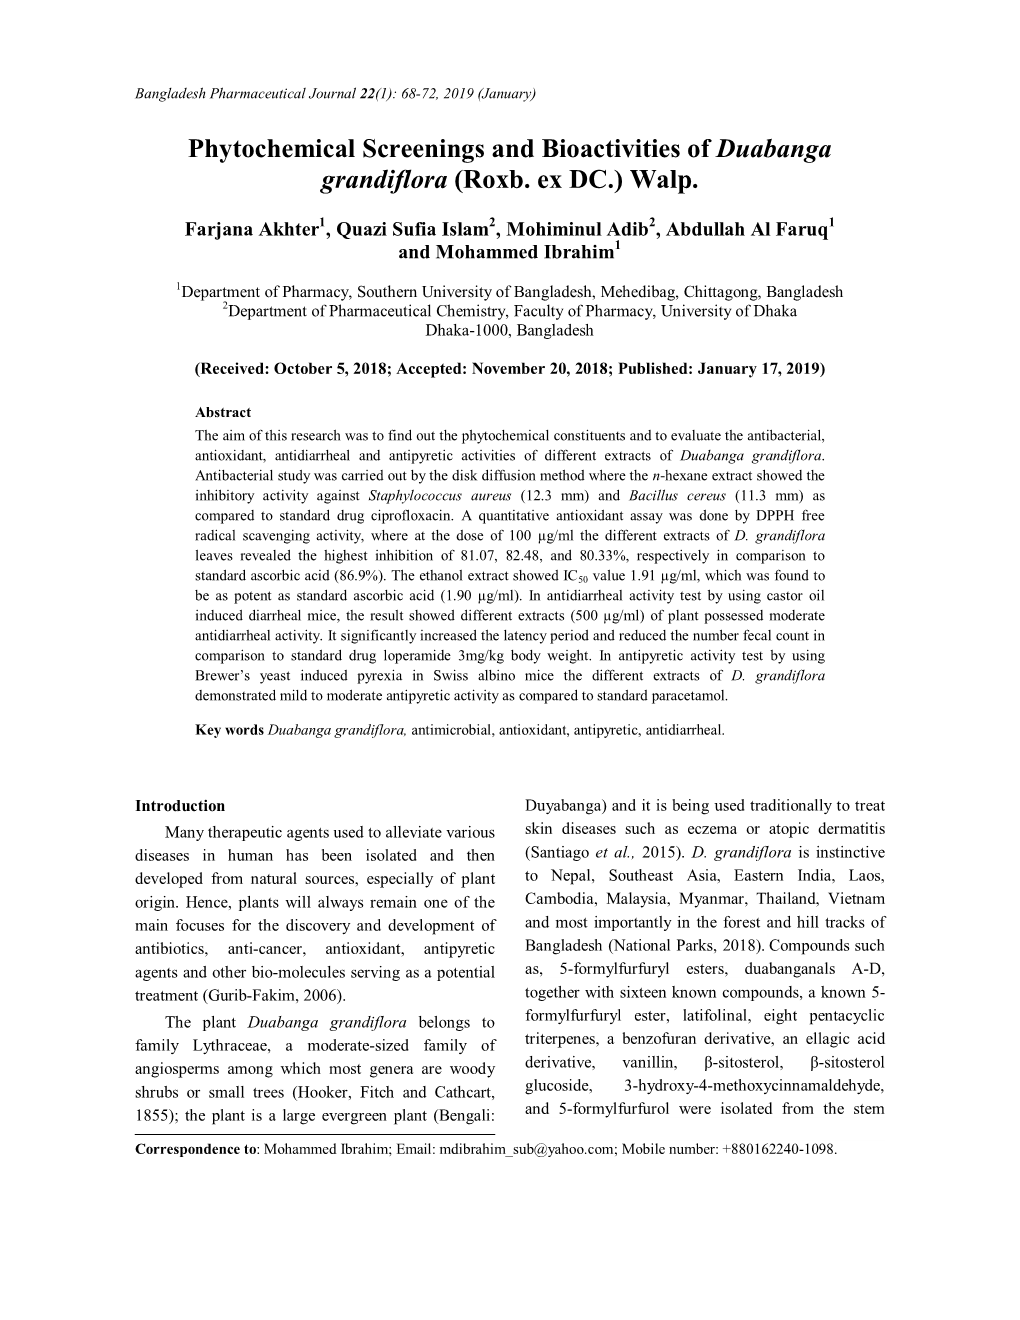 Phytochemical Screenings and Bioactivities of Duabanga Grandiflora (Roxb. Ex DC.) Walp